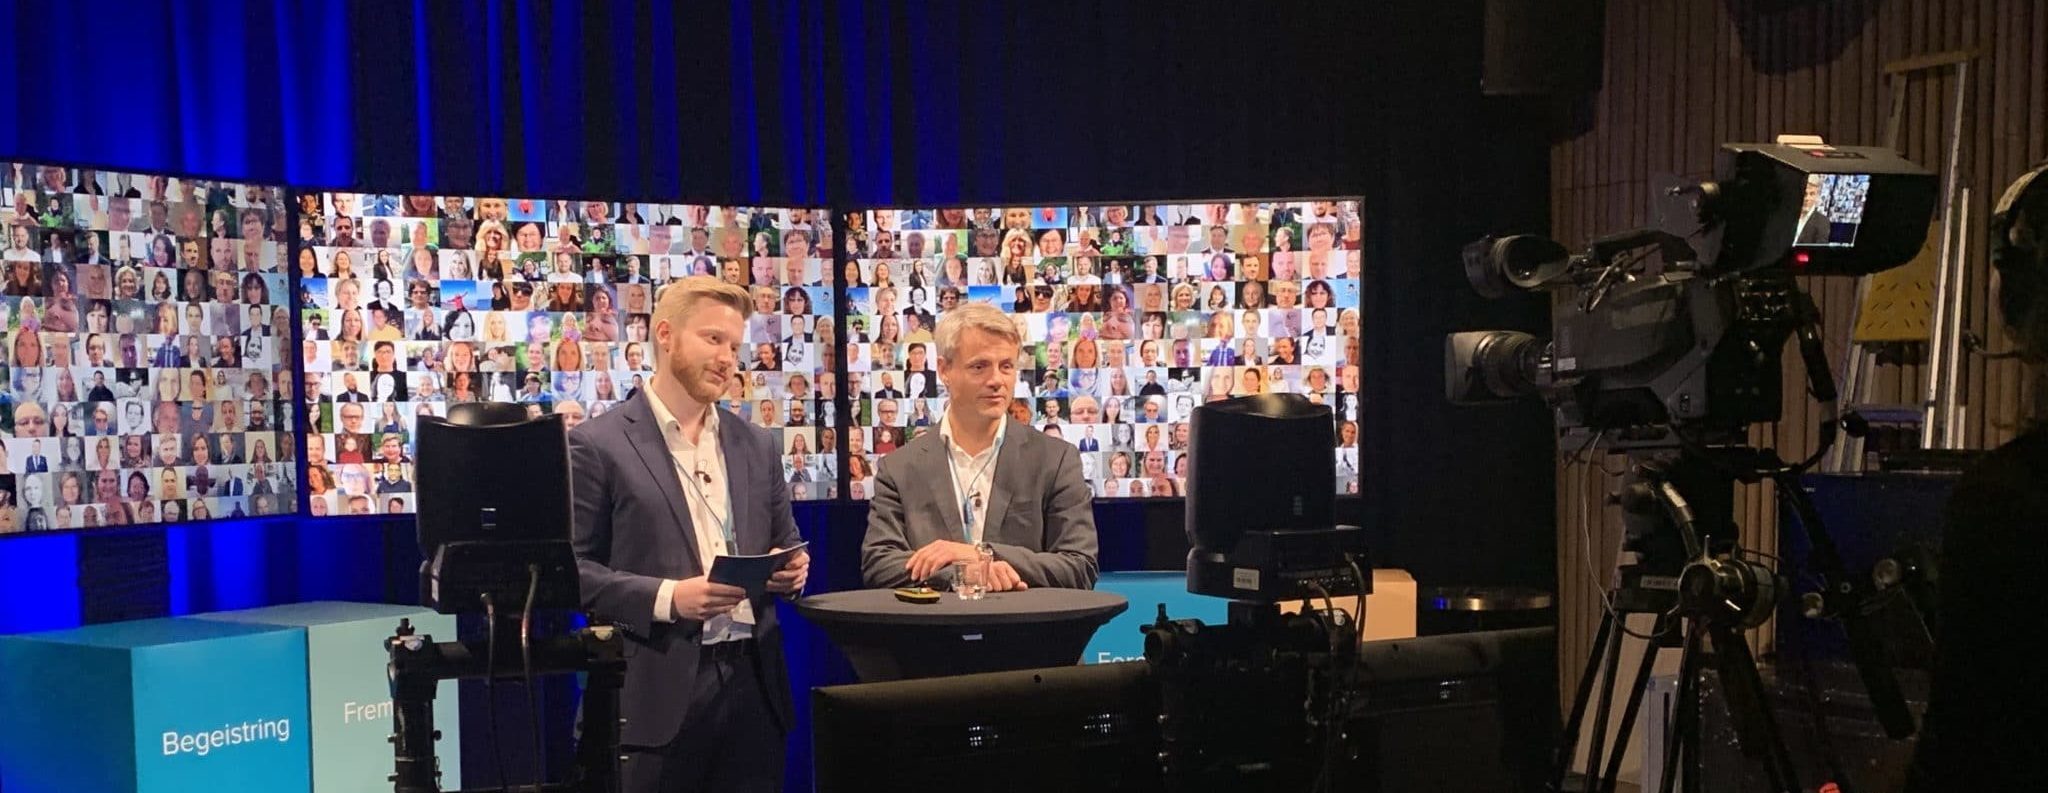 To menn stående i tv-studio foran skjermen